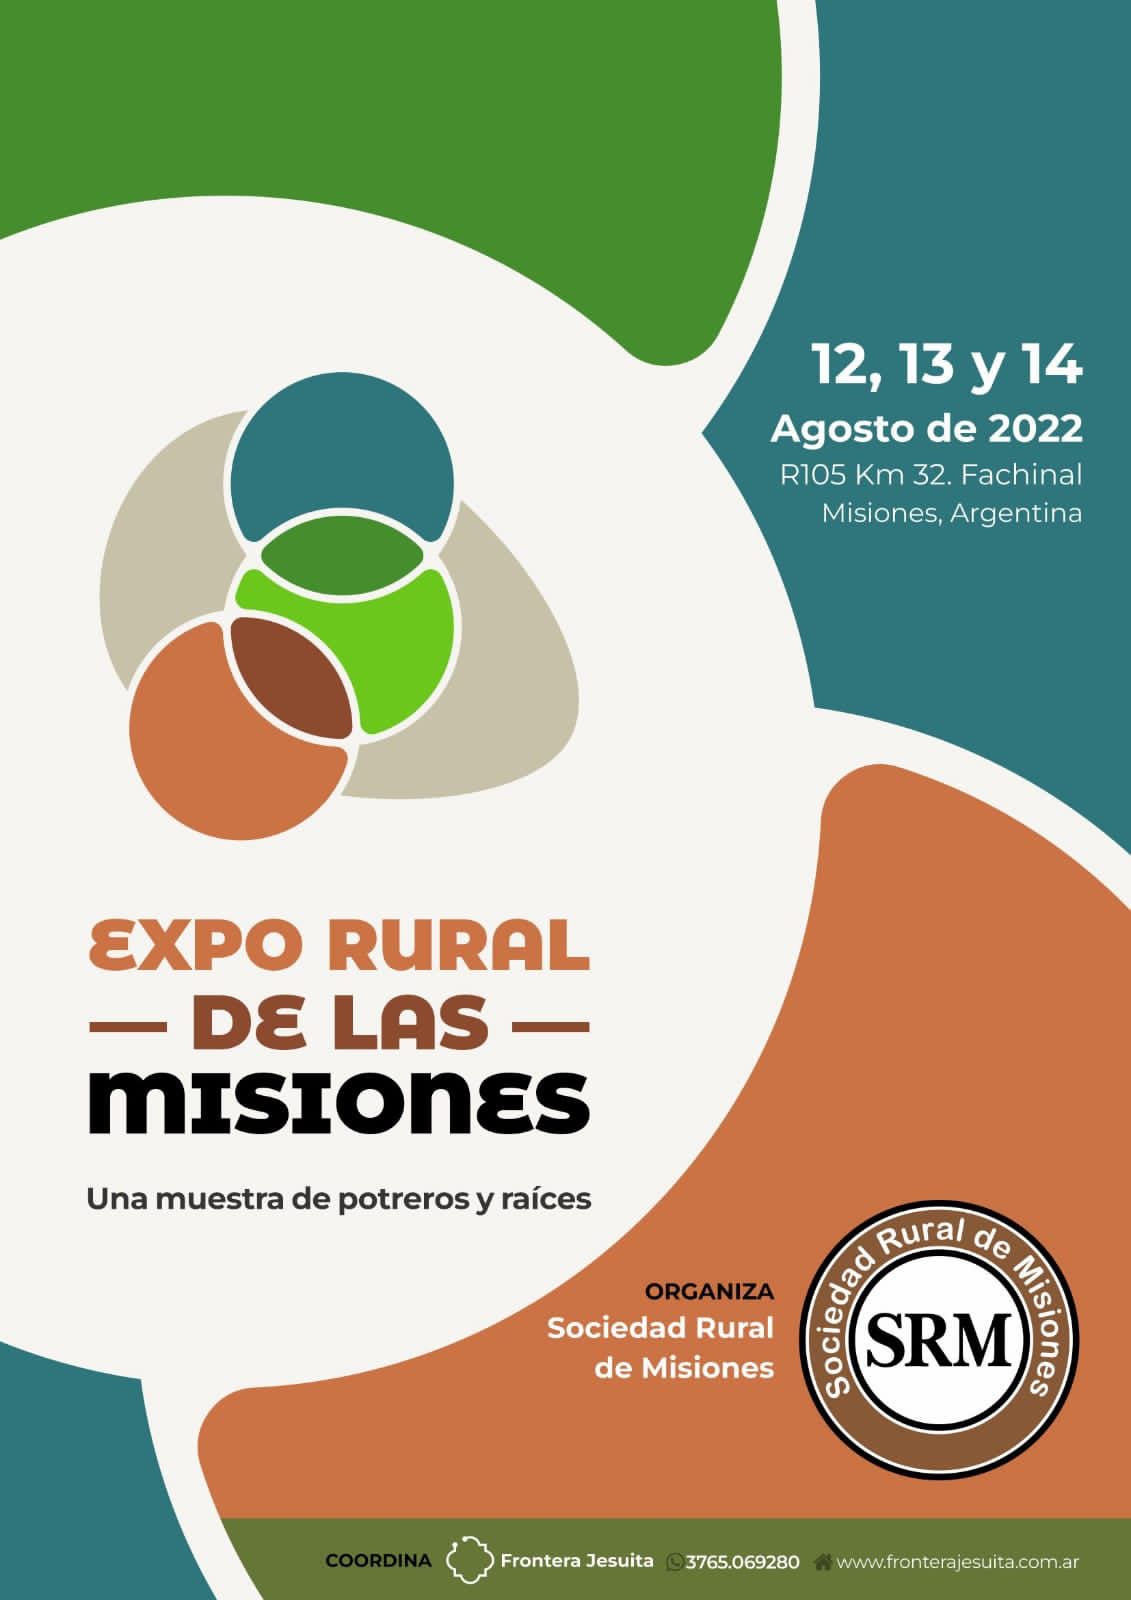 Vuelve la Expo Rural de Las Misiones: se realizarará en Fachinal 